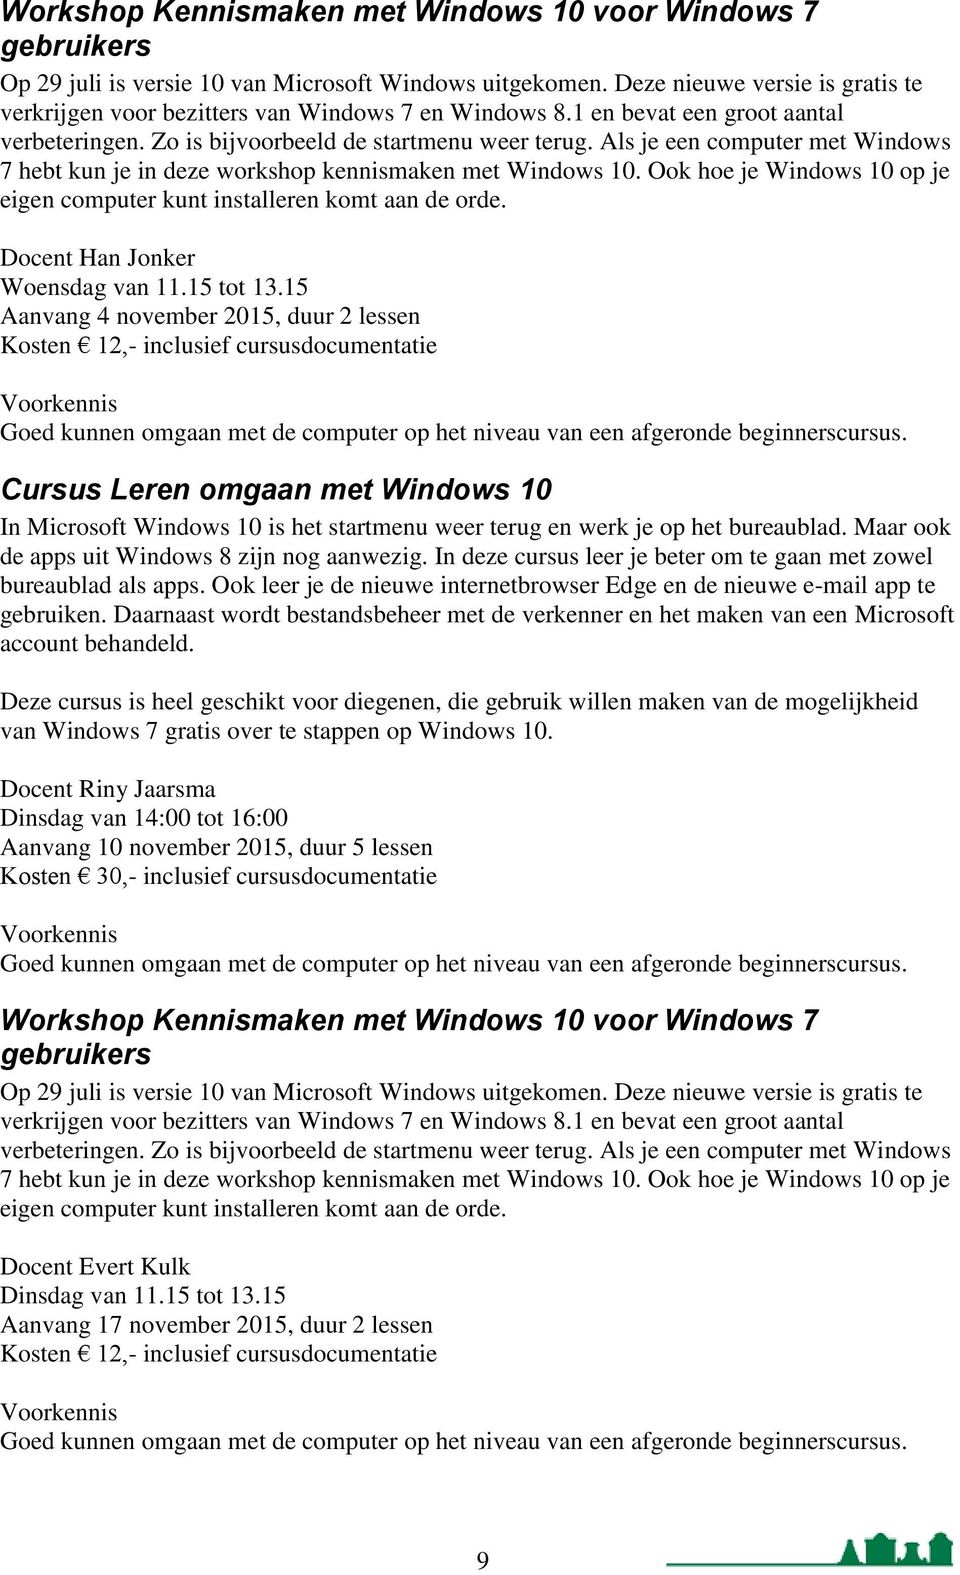 Als je een computer met Windows 7 hebt kun je in deze workshop kennismaken met Windows 10. Ook hoe je Windows 10 op je eigen computer kunt installeren komt aan de orde.